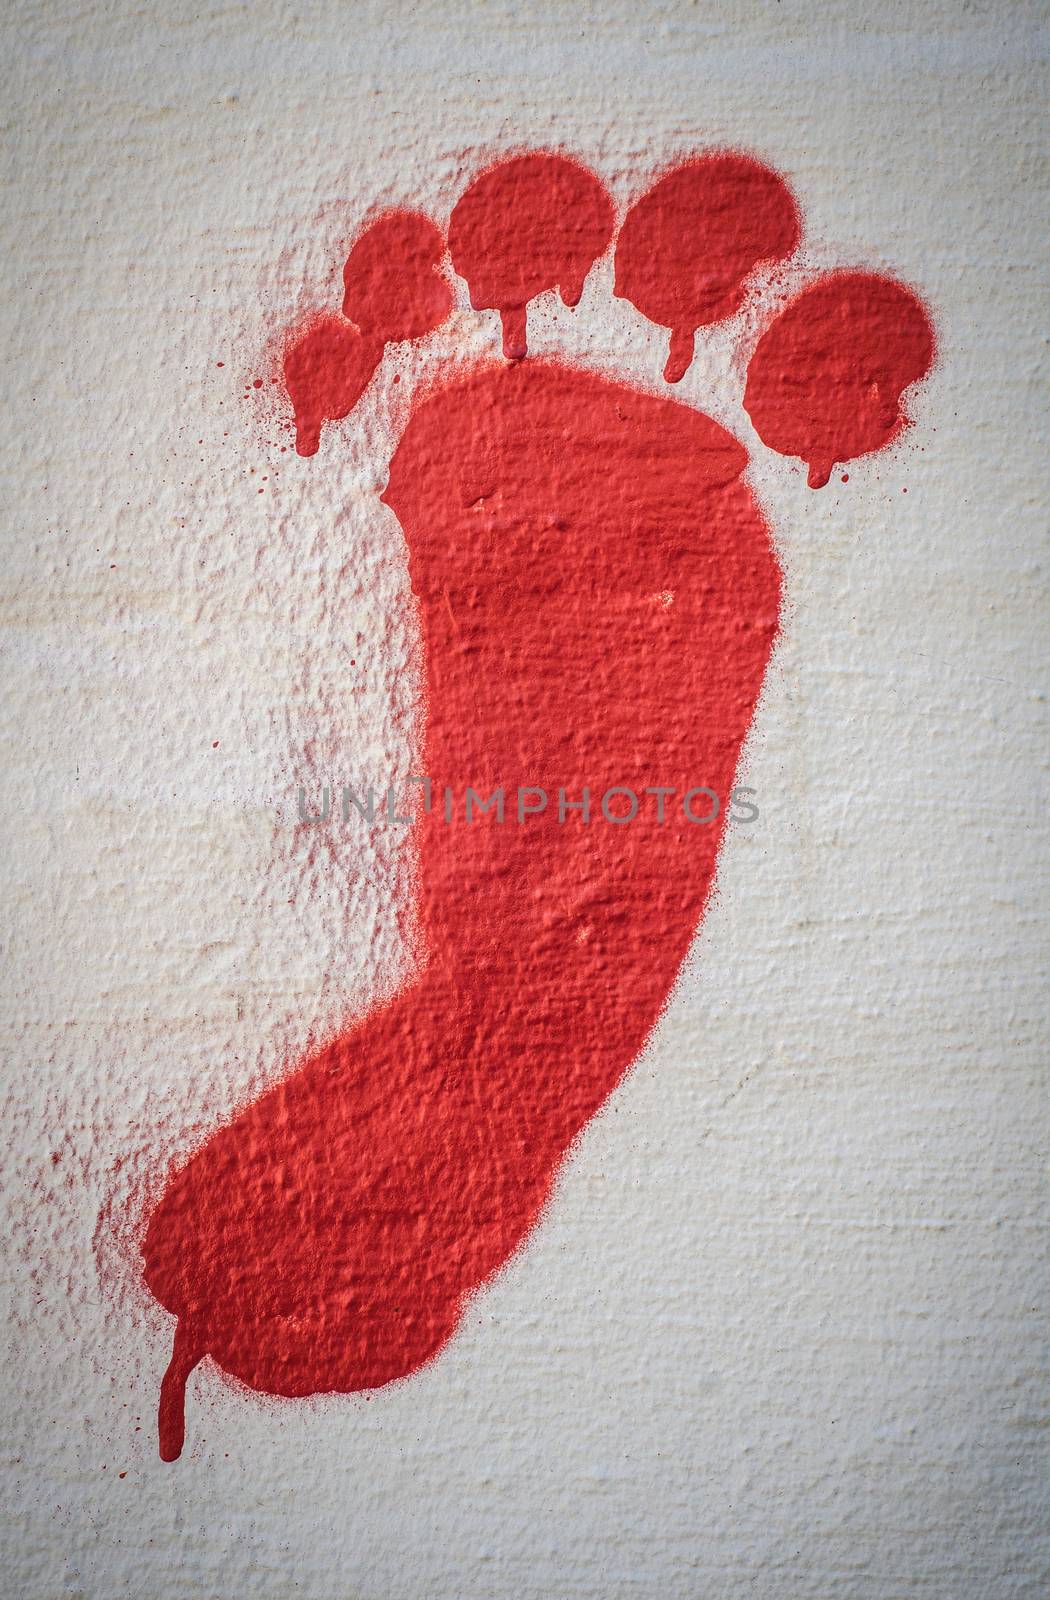 Red Graffiti Foot by mrdoomits